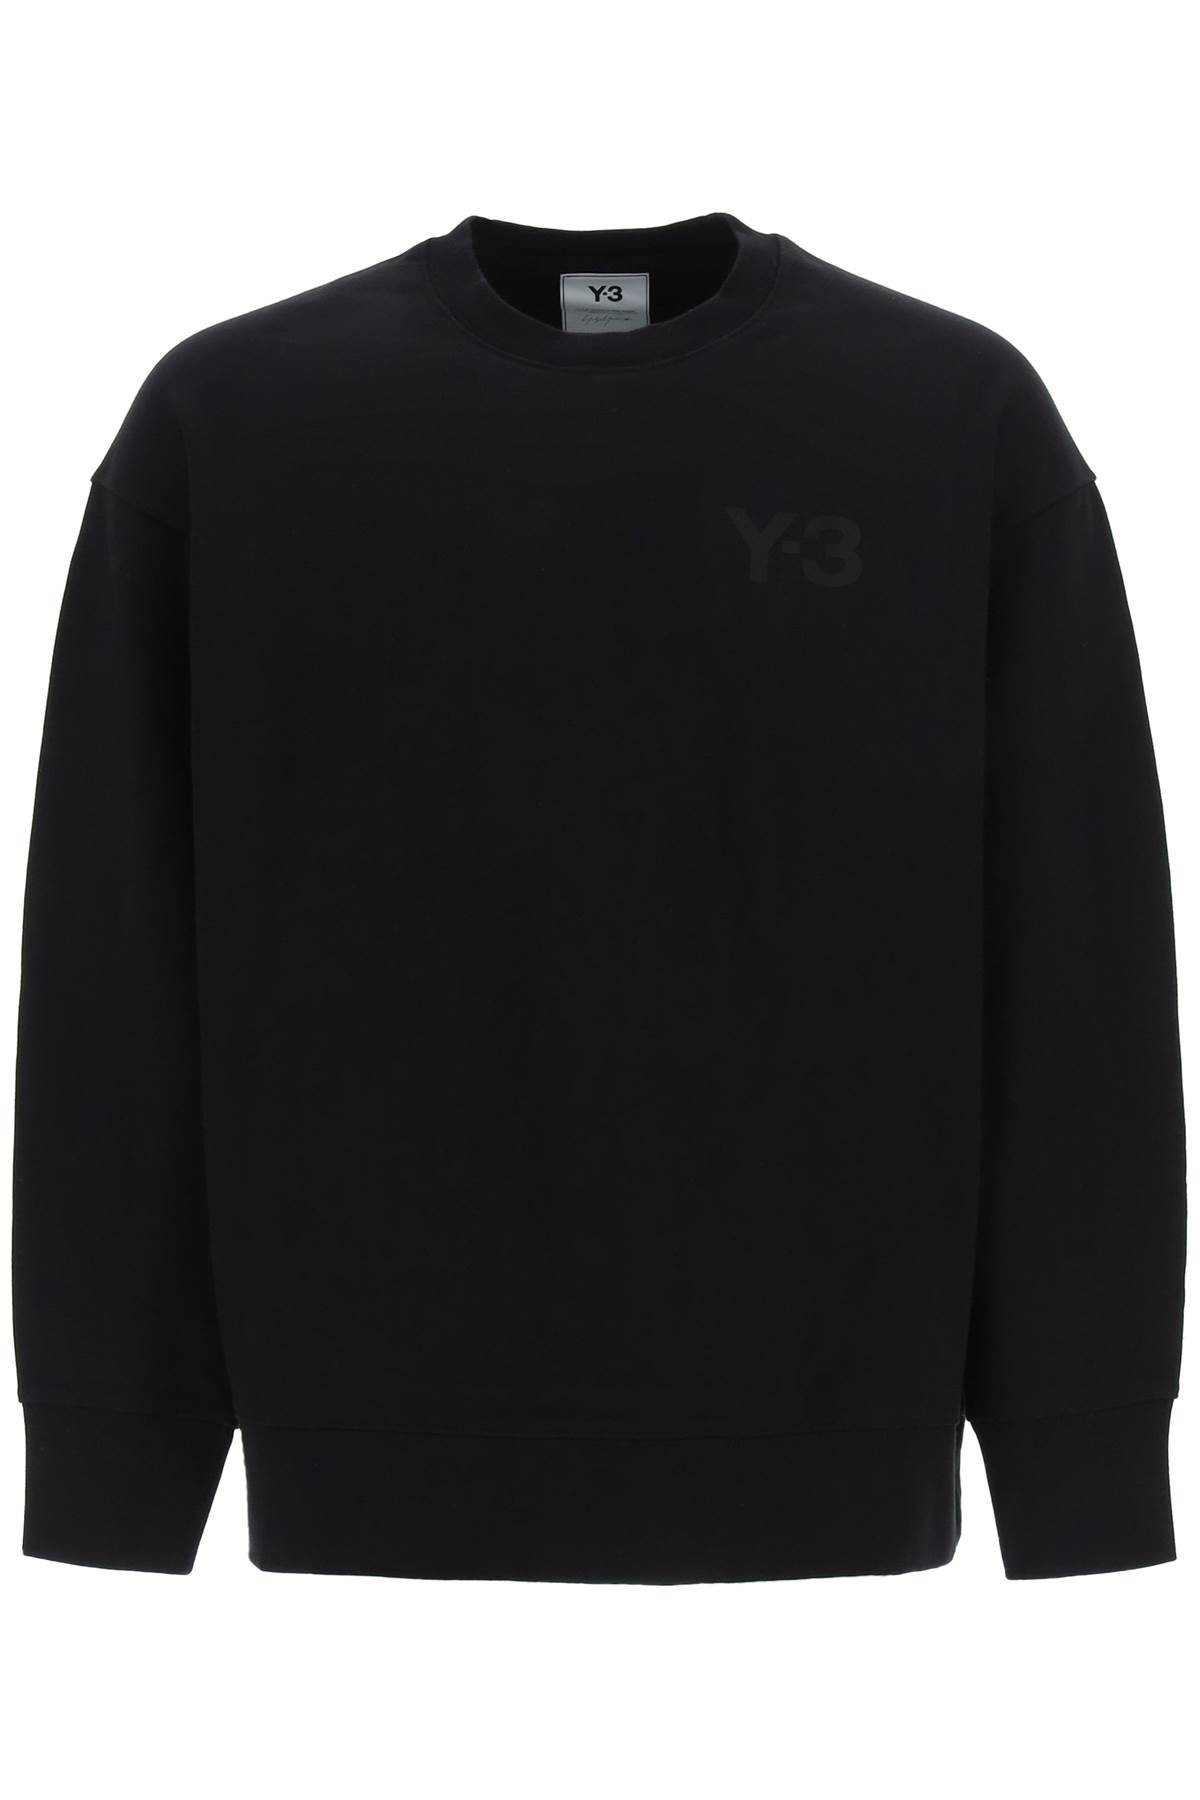 Y-3 Chest Logo Sweatshirt